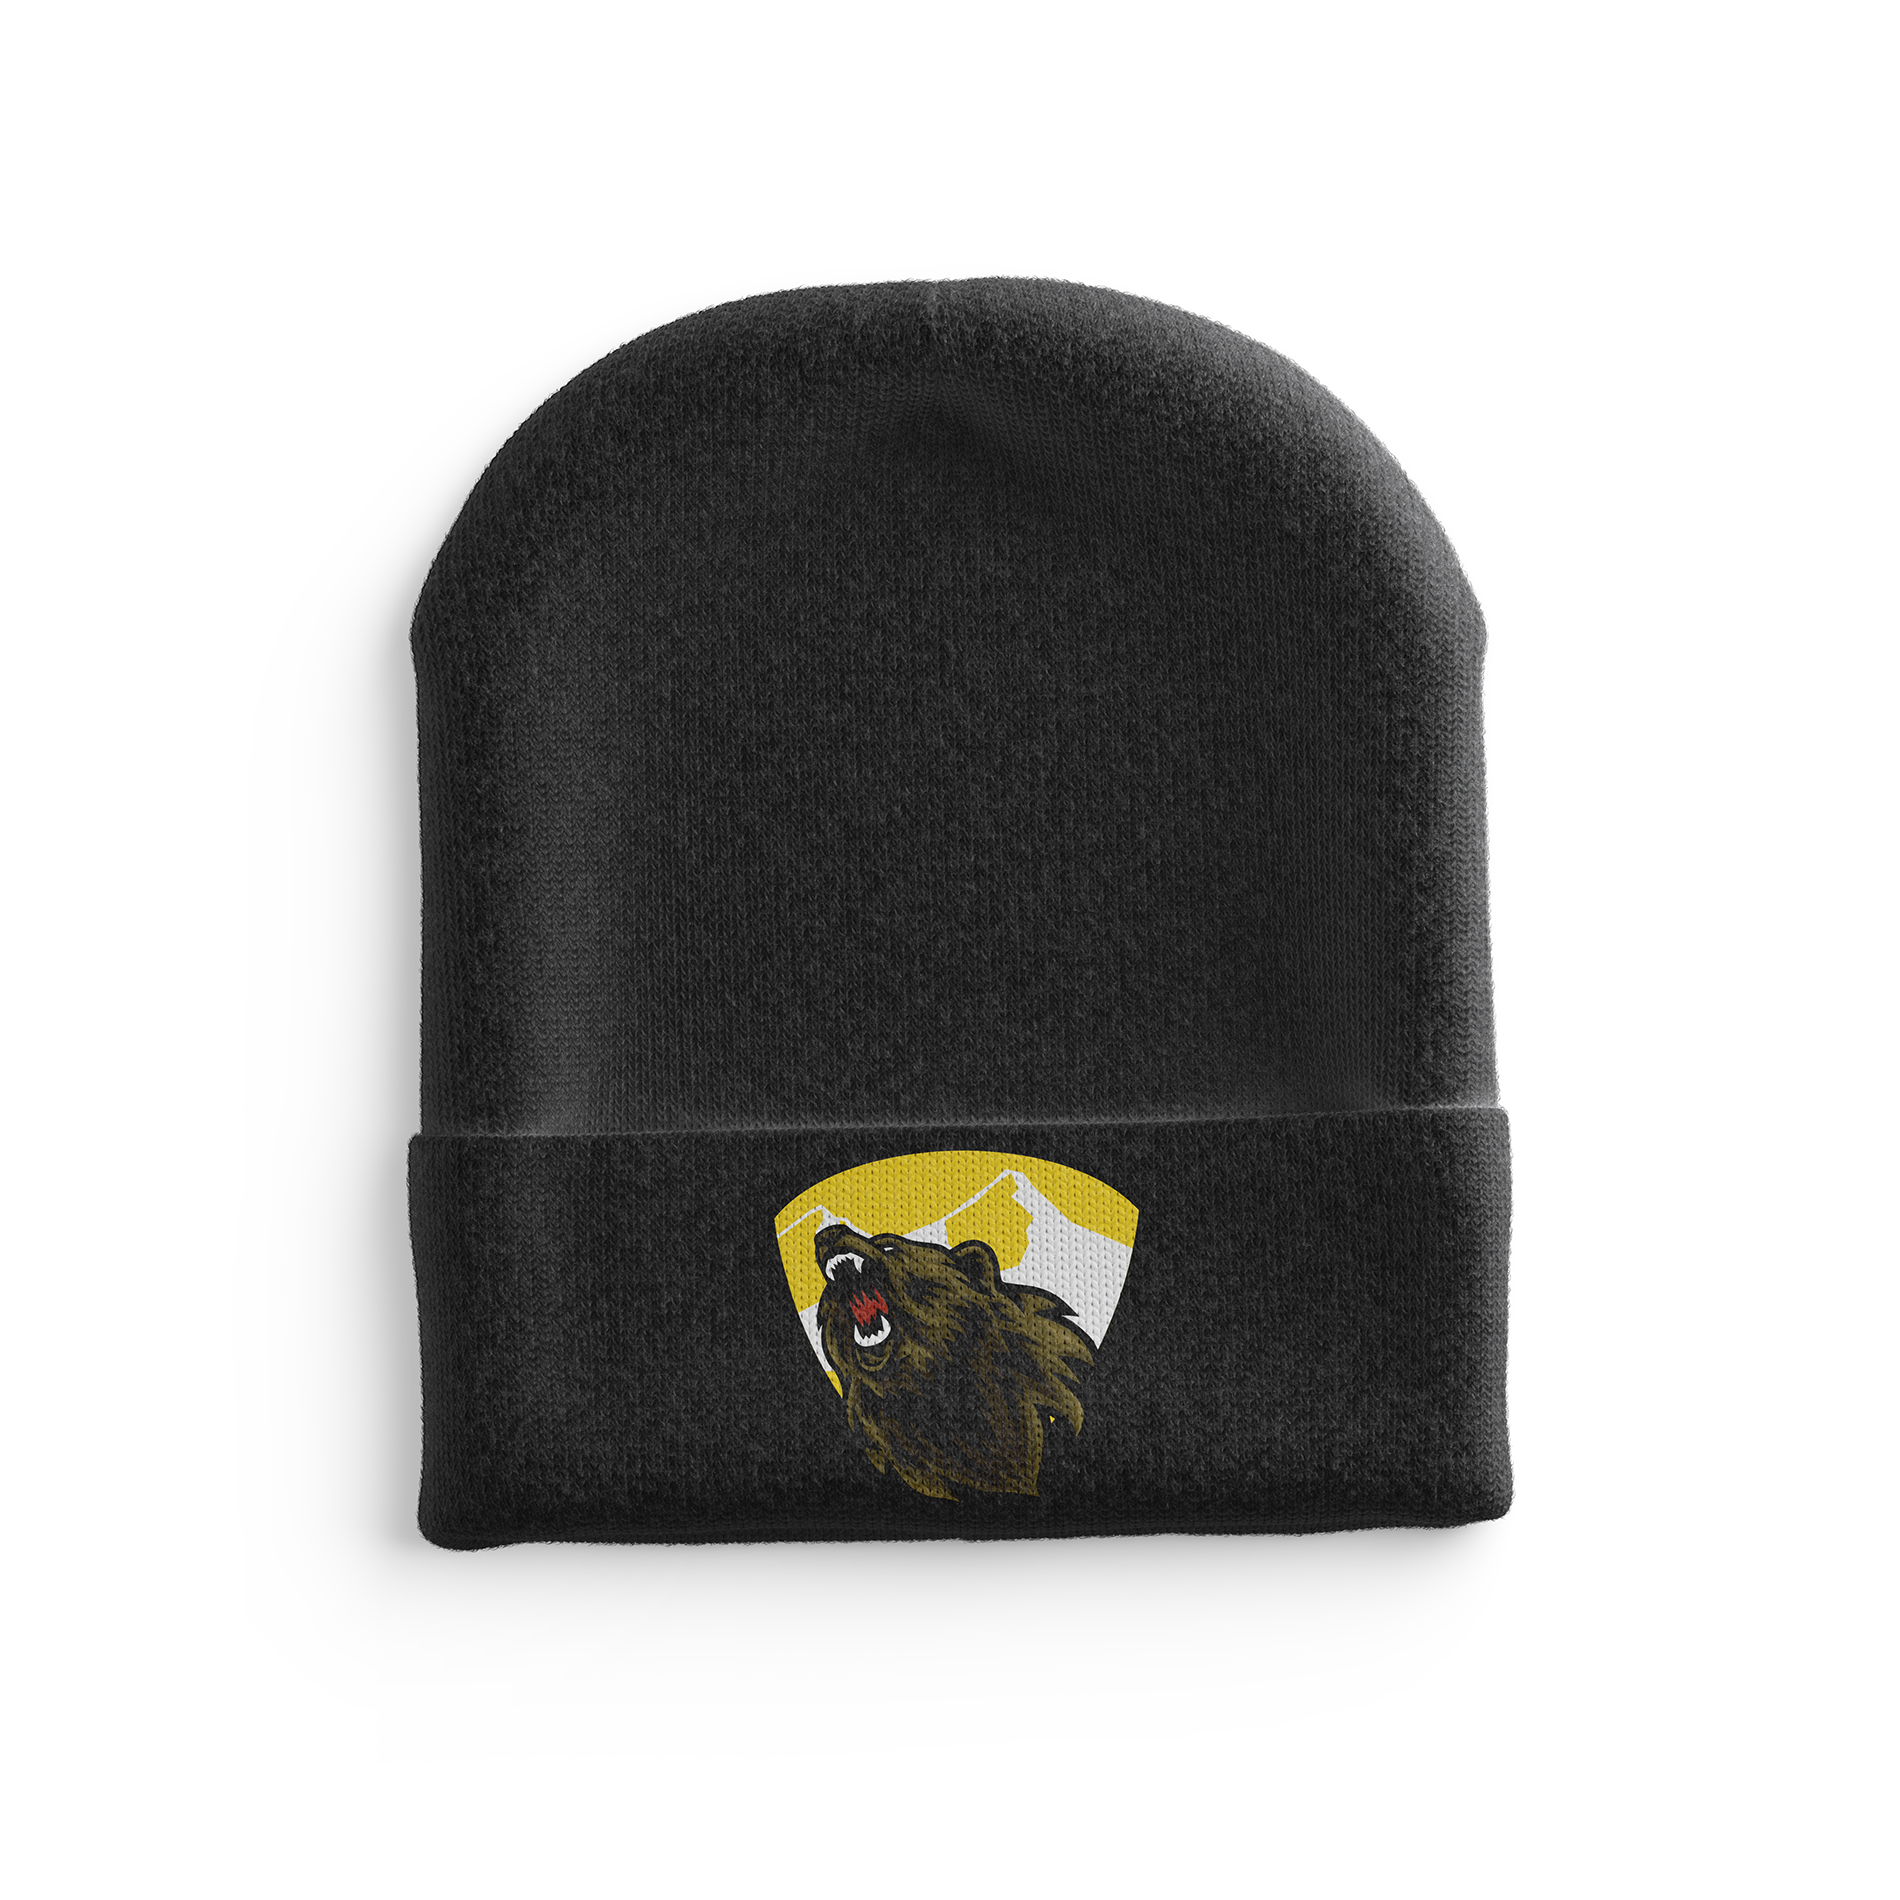 Black Knit Barron/Chetek Grizzlies hat - Redwolf Jersey Works